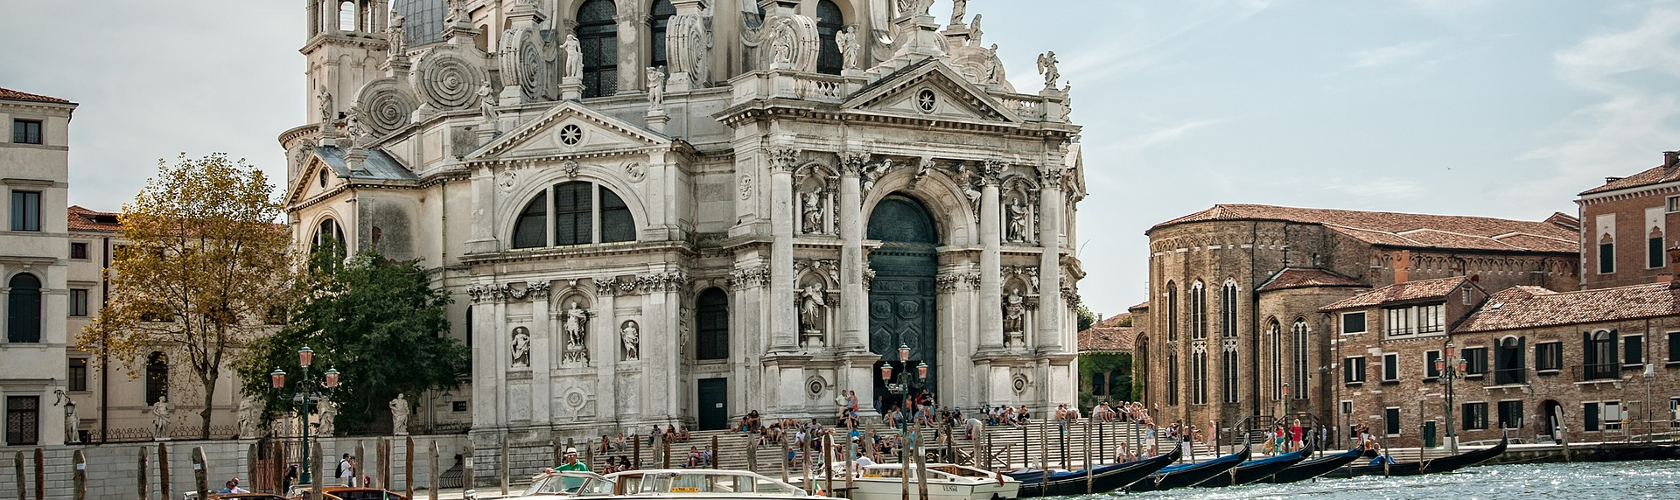 le chiese di Venezia